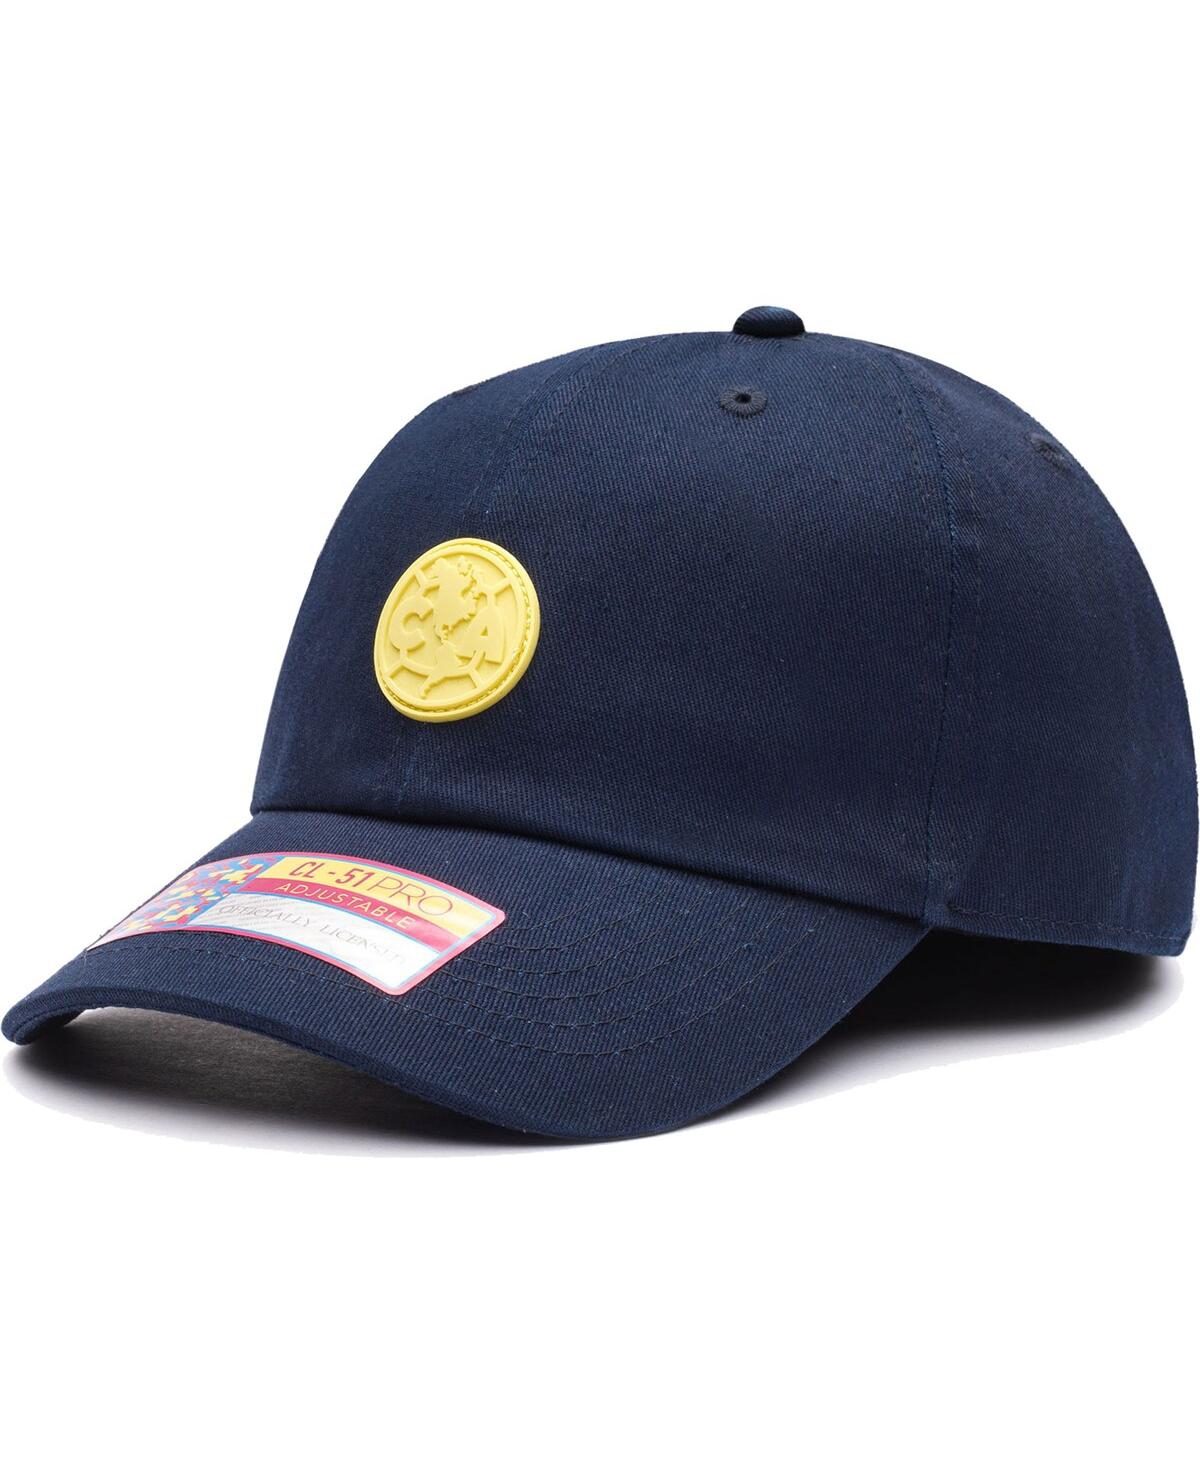 Men's Navy Club America Casuals Adjustable Hat - Navy